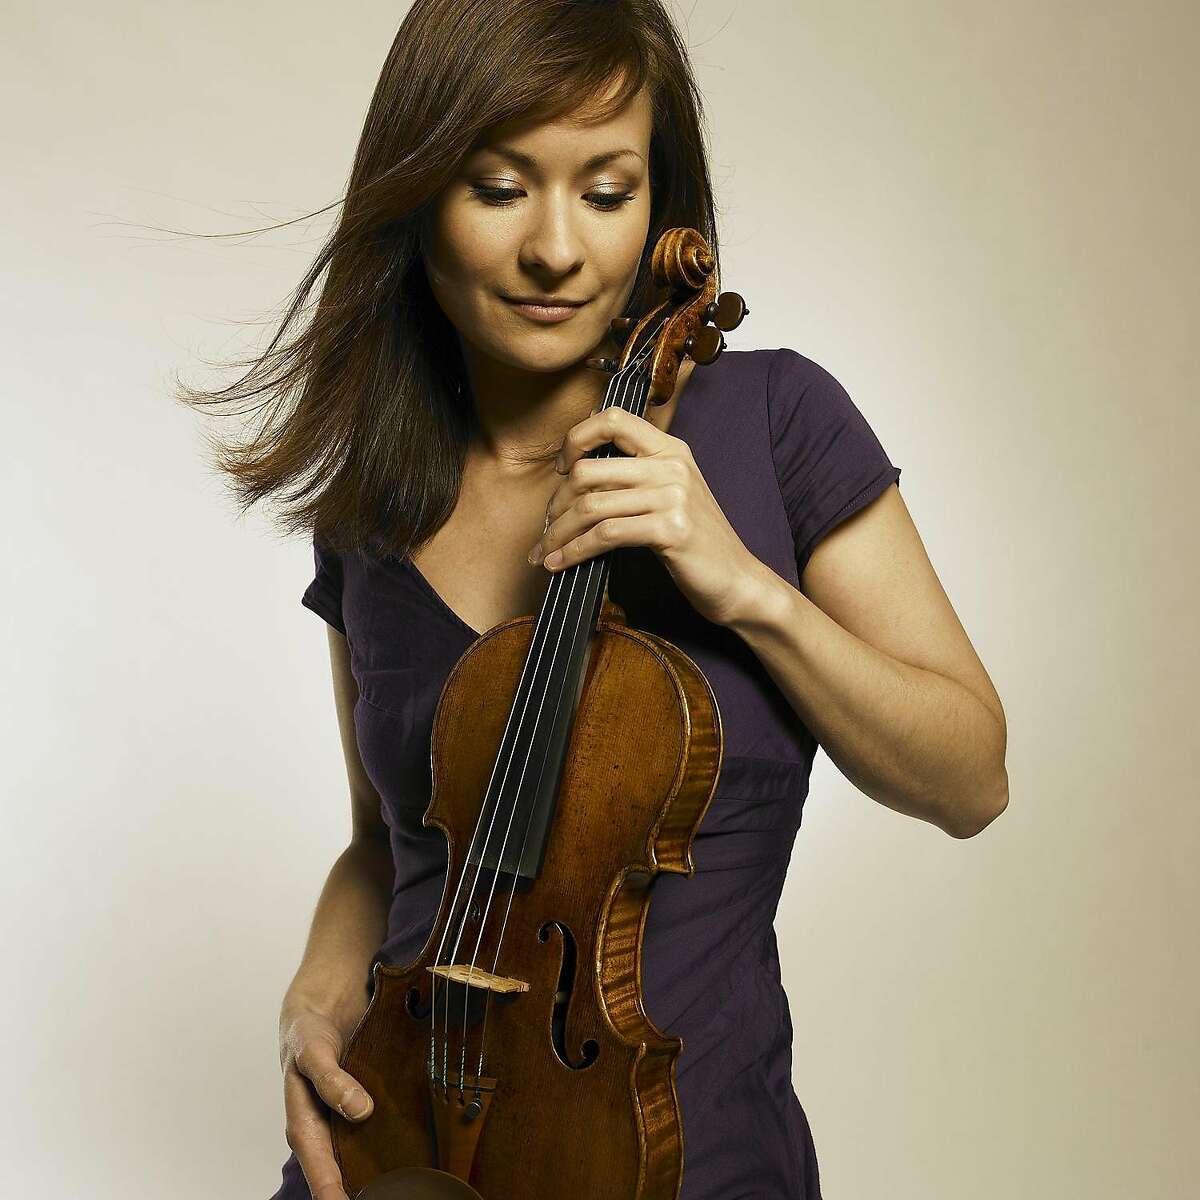 Violinist Arabella Steinbacher